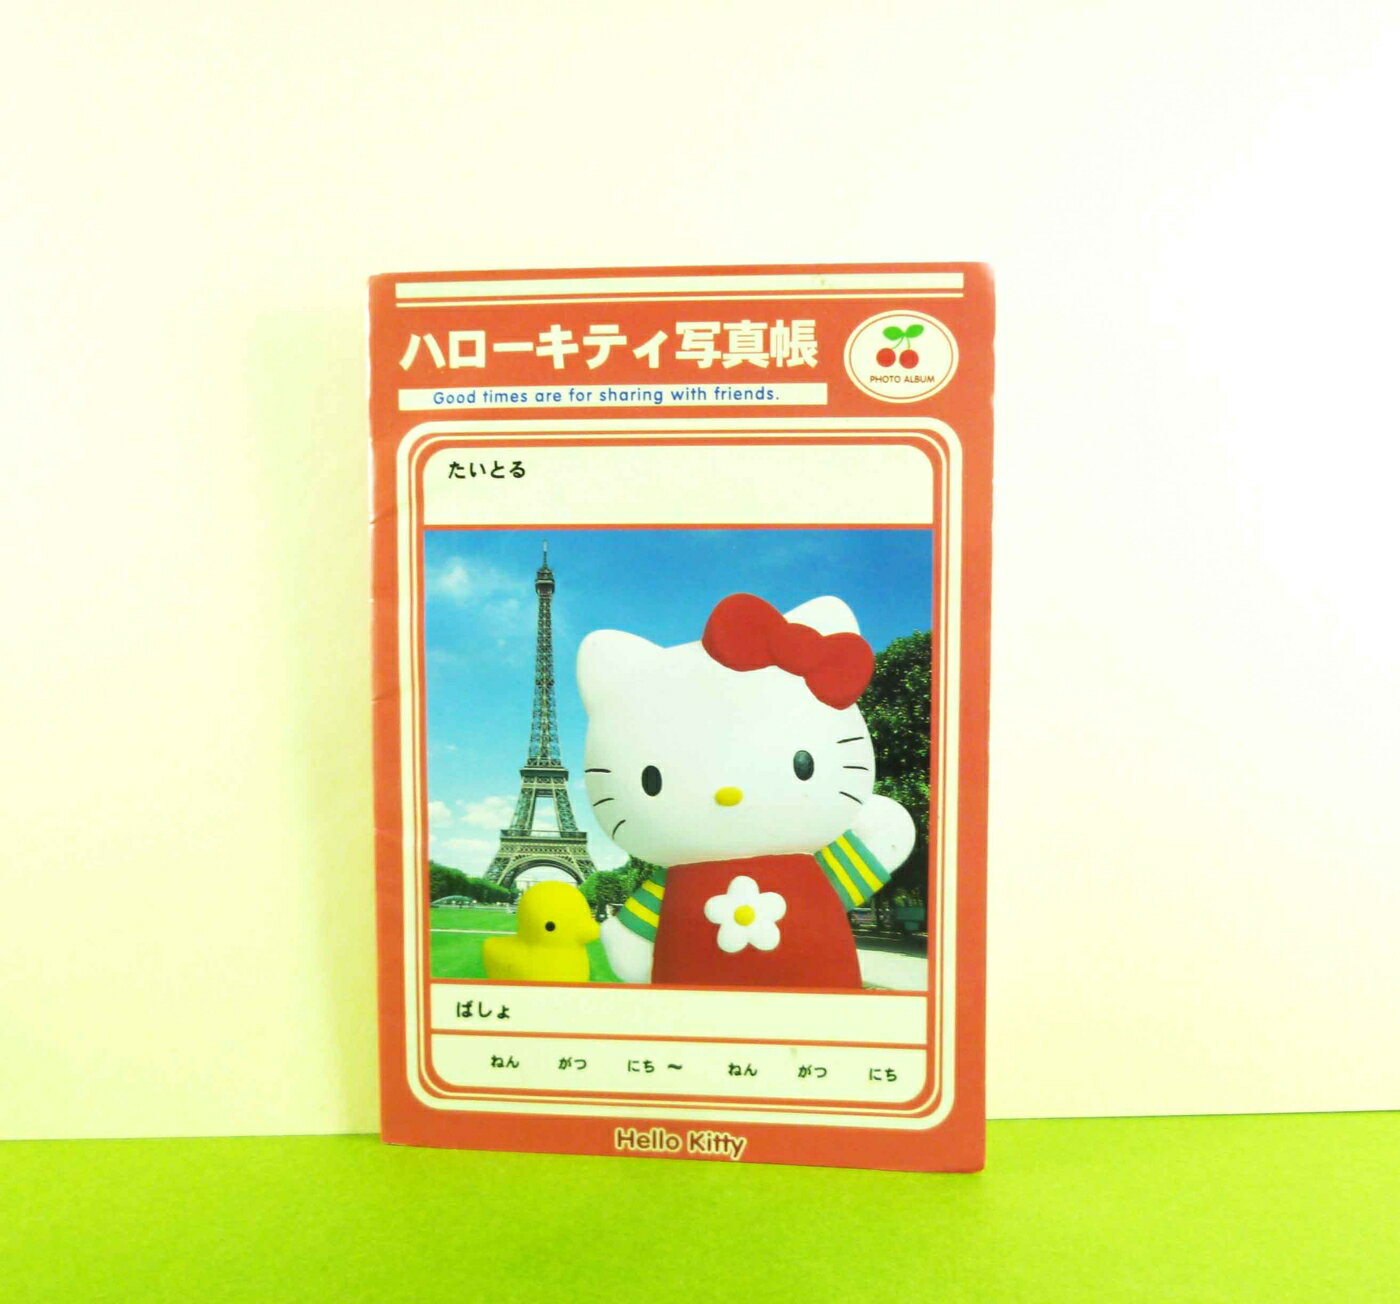 【震撼精品百貨】Hello Kitty 凱蒂貓 3*5相本 巴黎【共1款】 震撼日式精品百貨